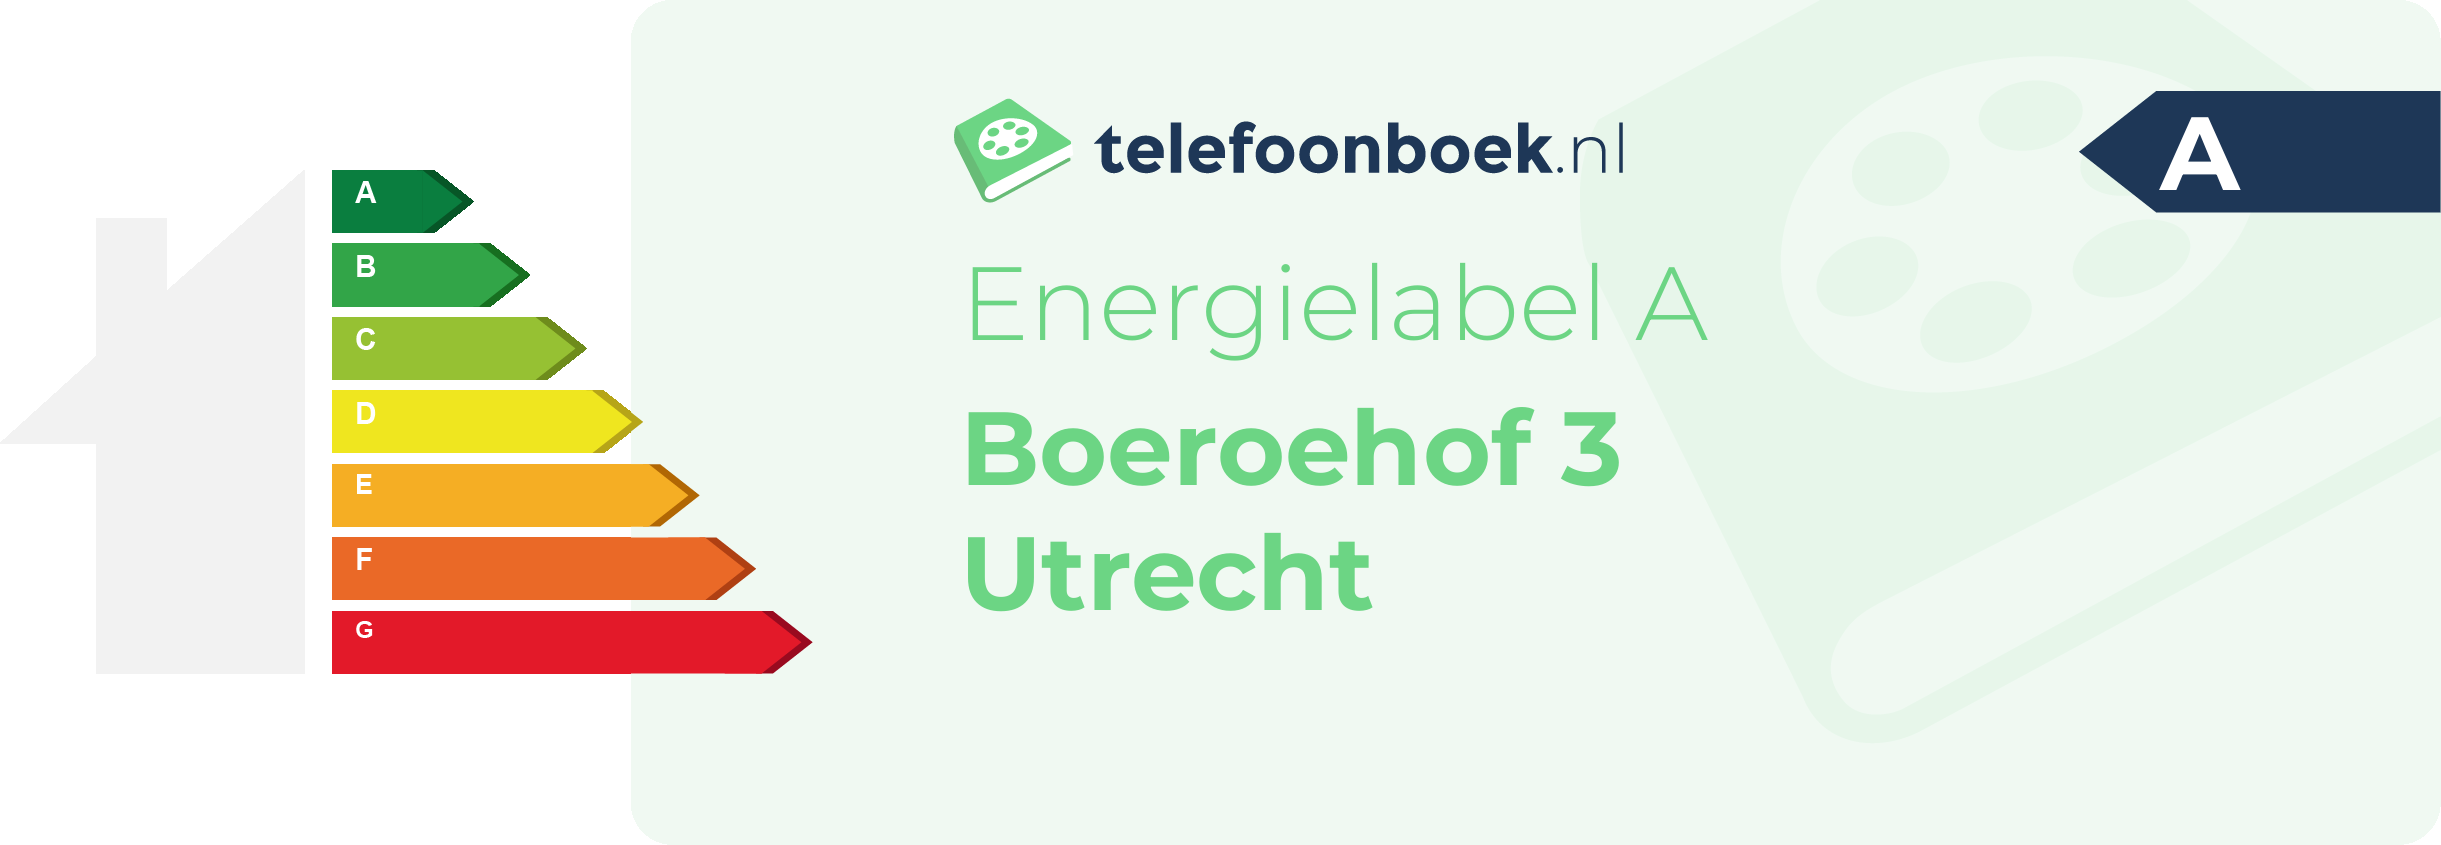 Energielabel Boeroehof 3 Utrecht